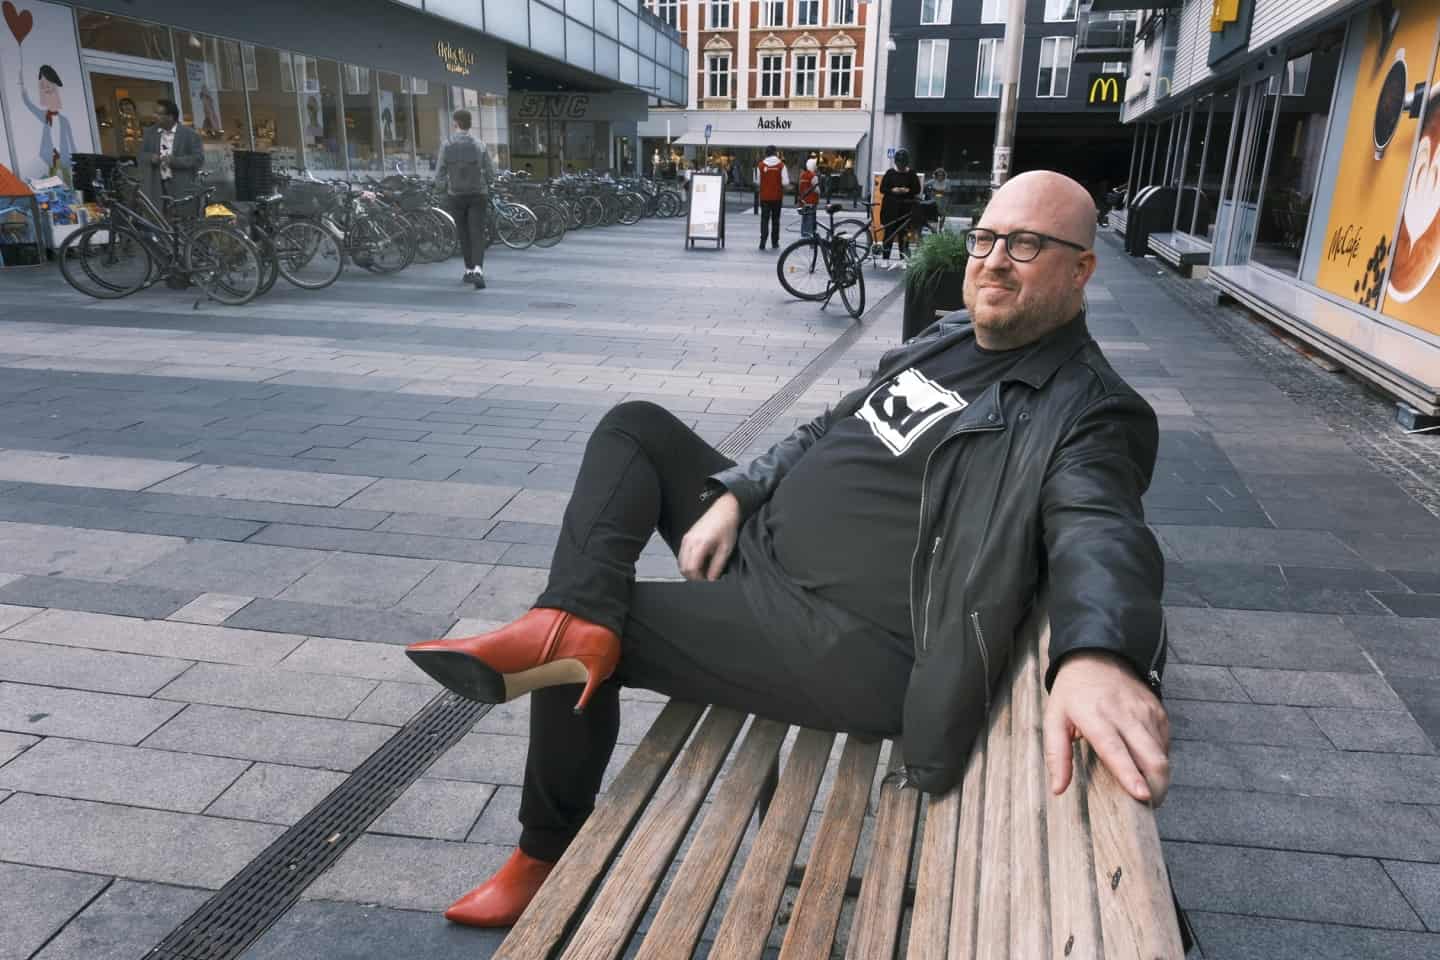 Så behagelige at selv mænd går i Nu rykker eksklusiv skobutik ind på Torv | stiften.dk